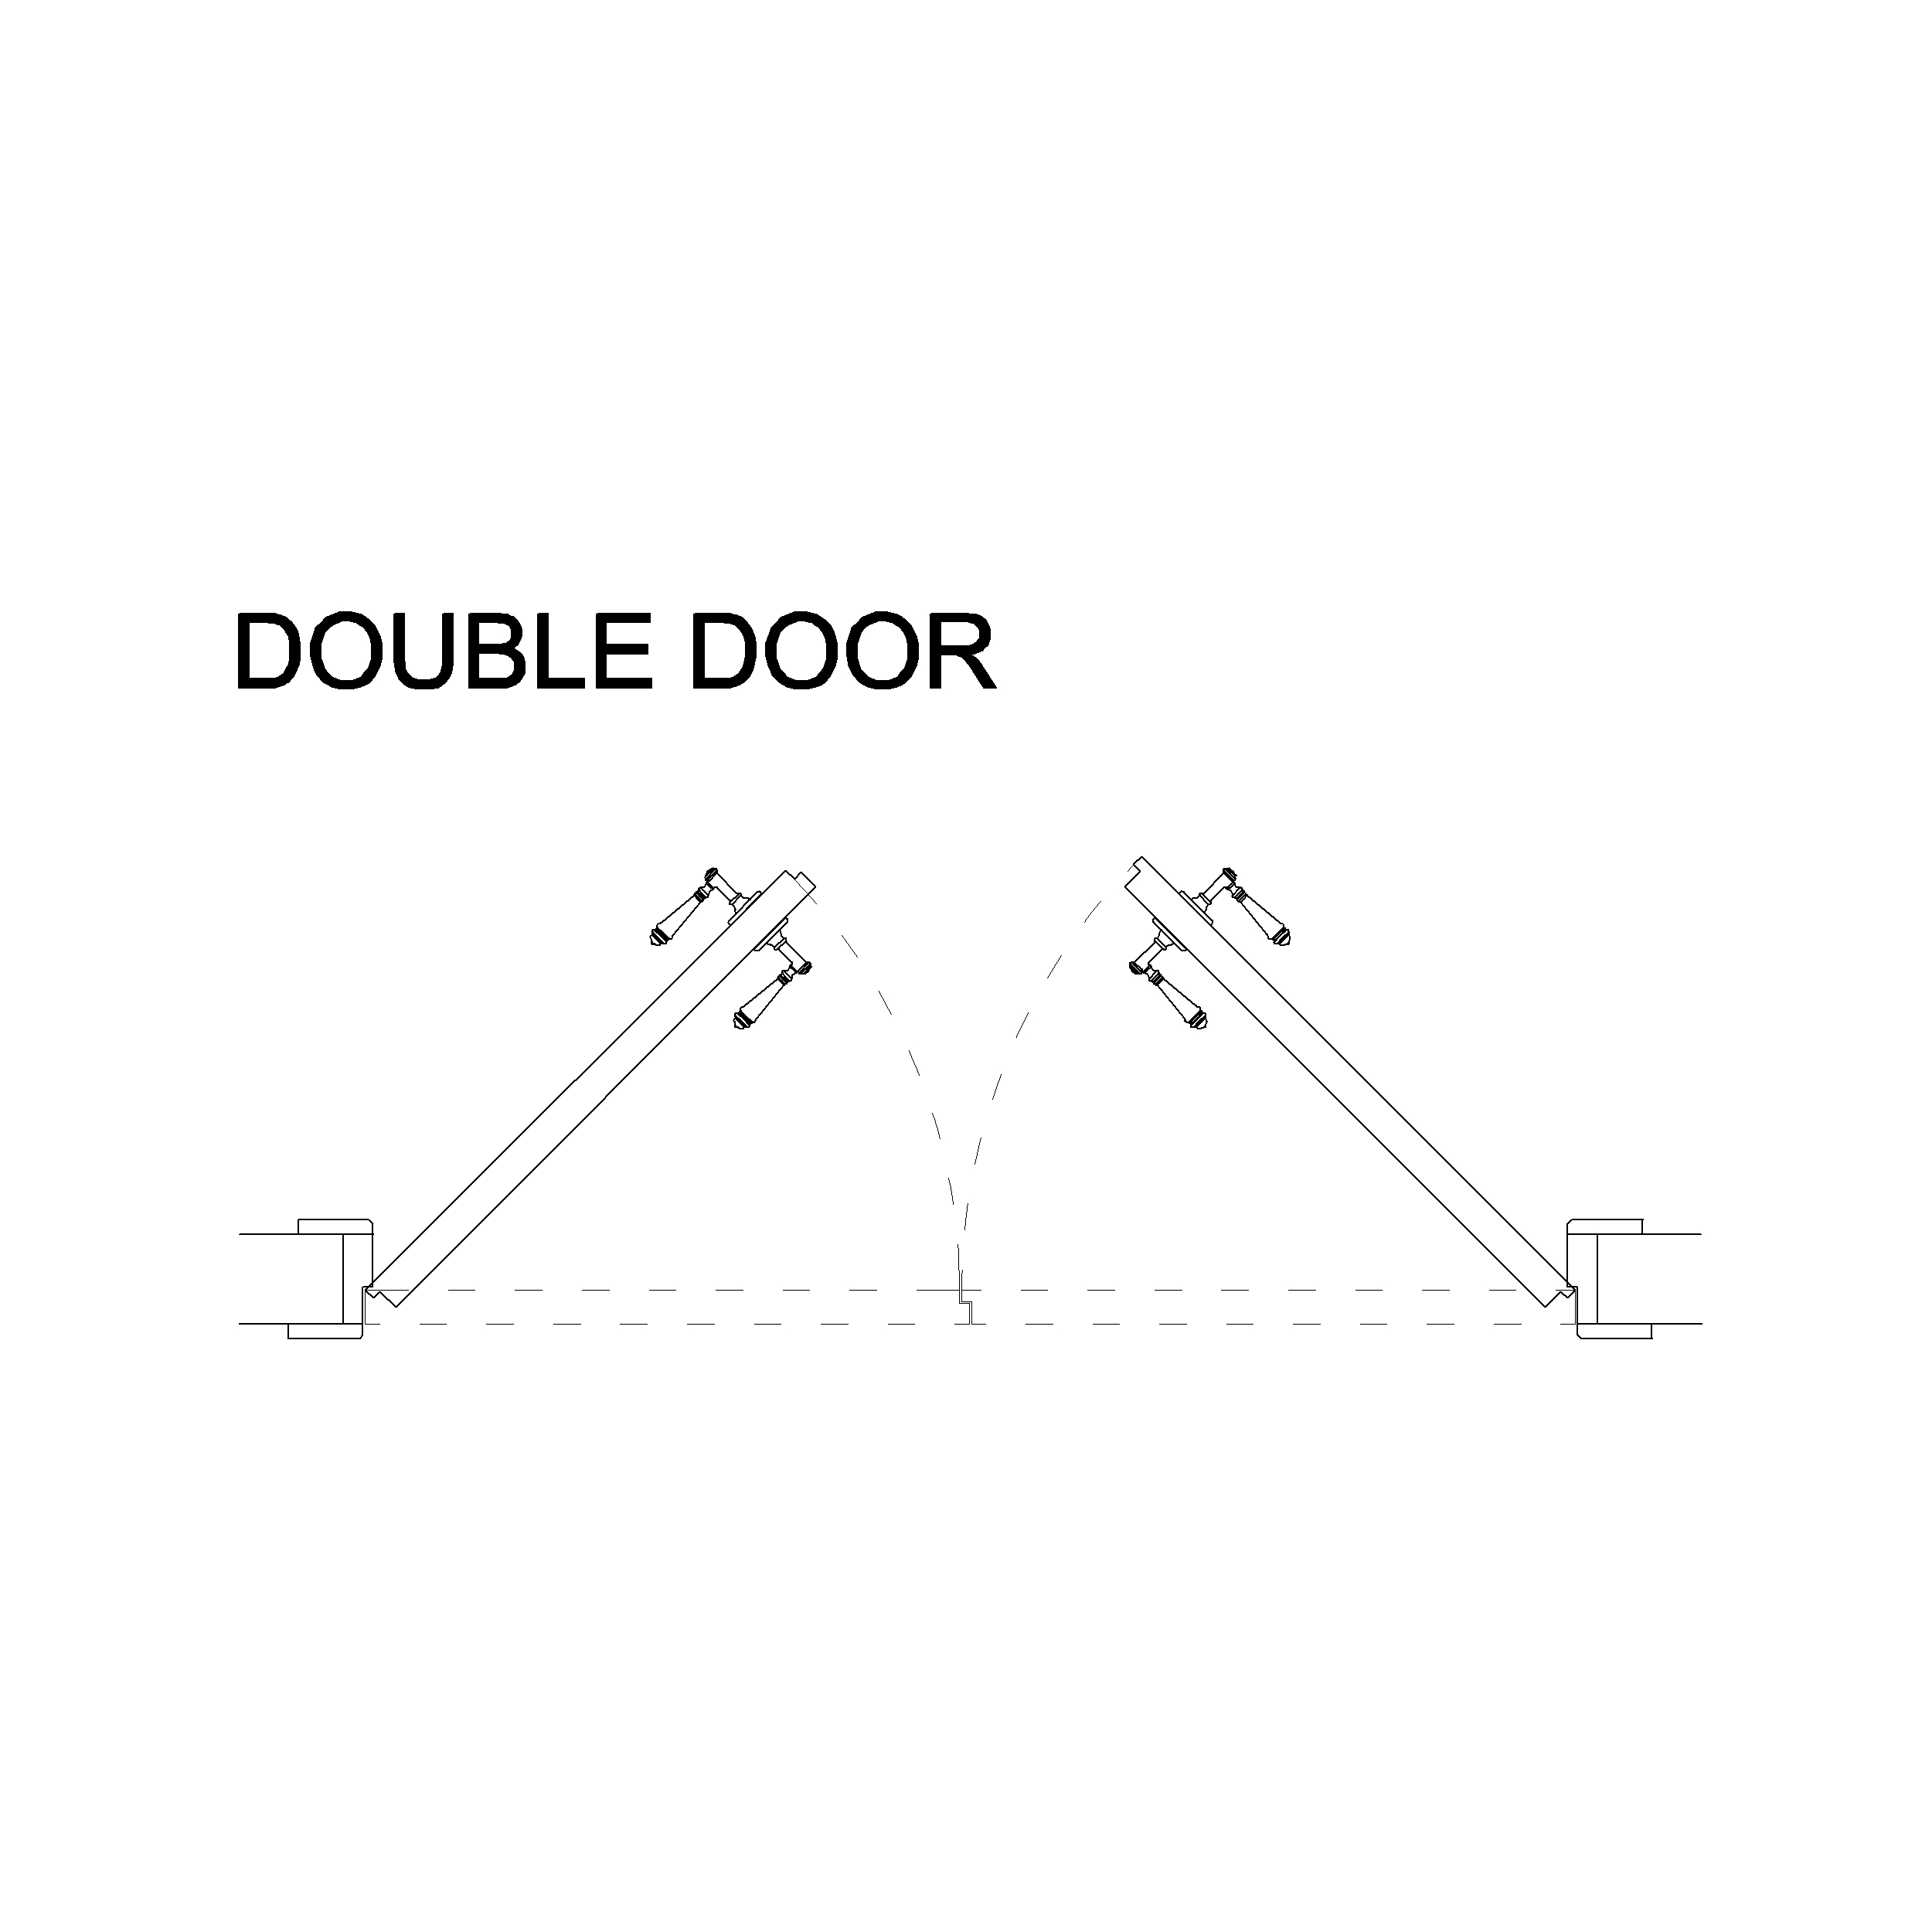 Double Door: 2D Top View Plan - Cadblockdwg